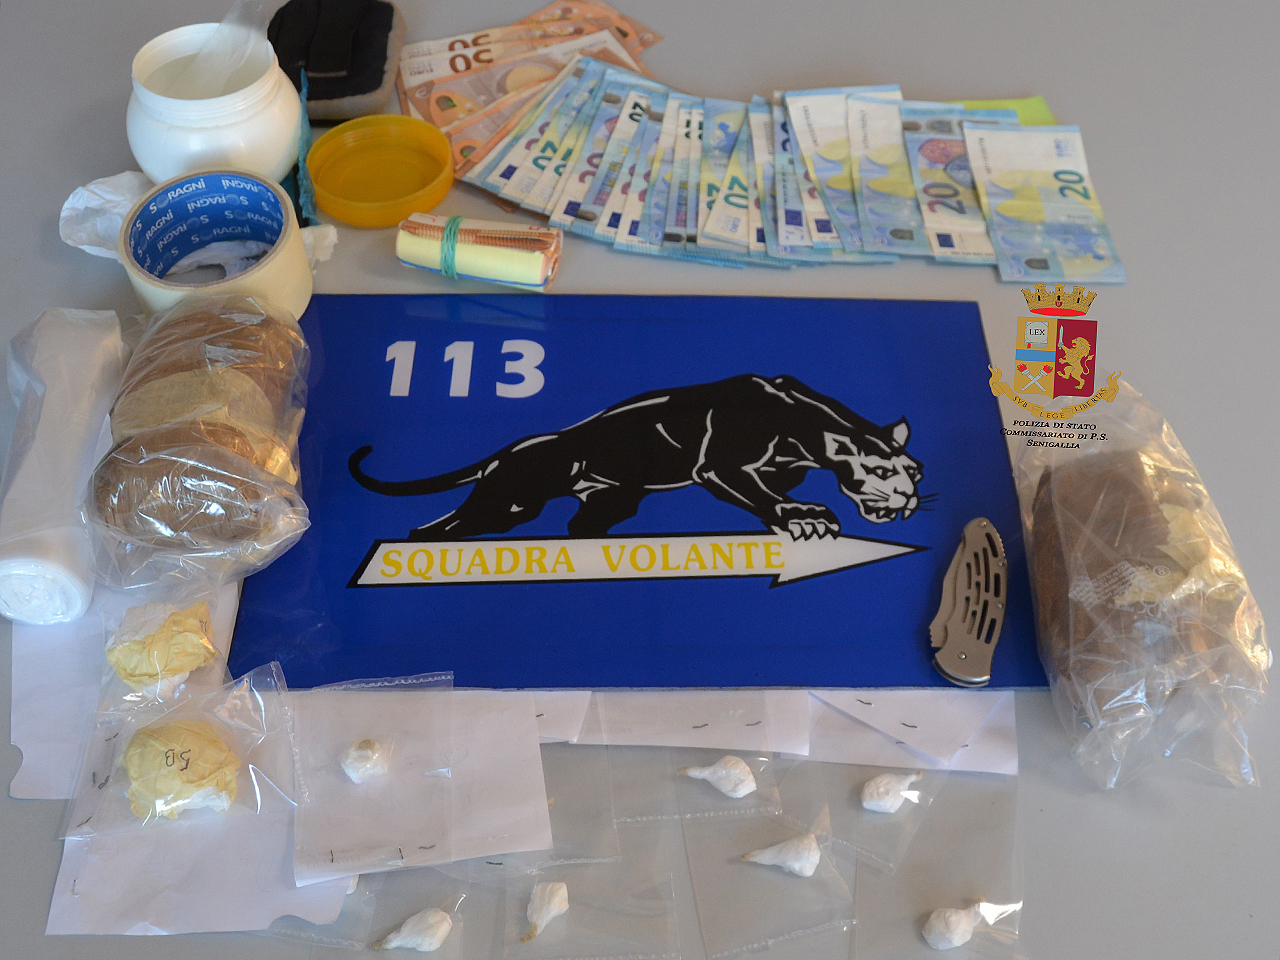 La cocaina, il denaro e la strumentazione sequestrata dalla Polizia di Senigallia a un 50enne finito in carcere